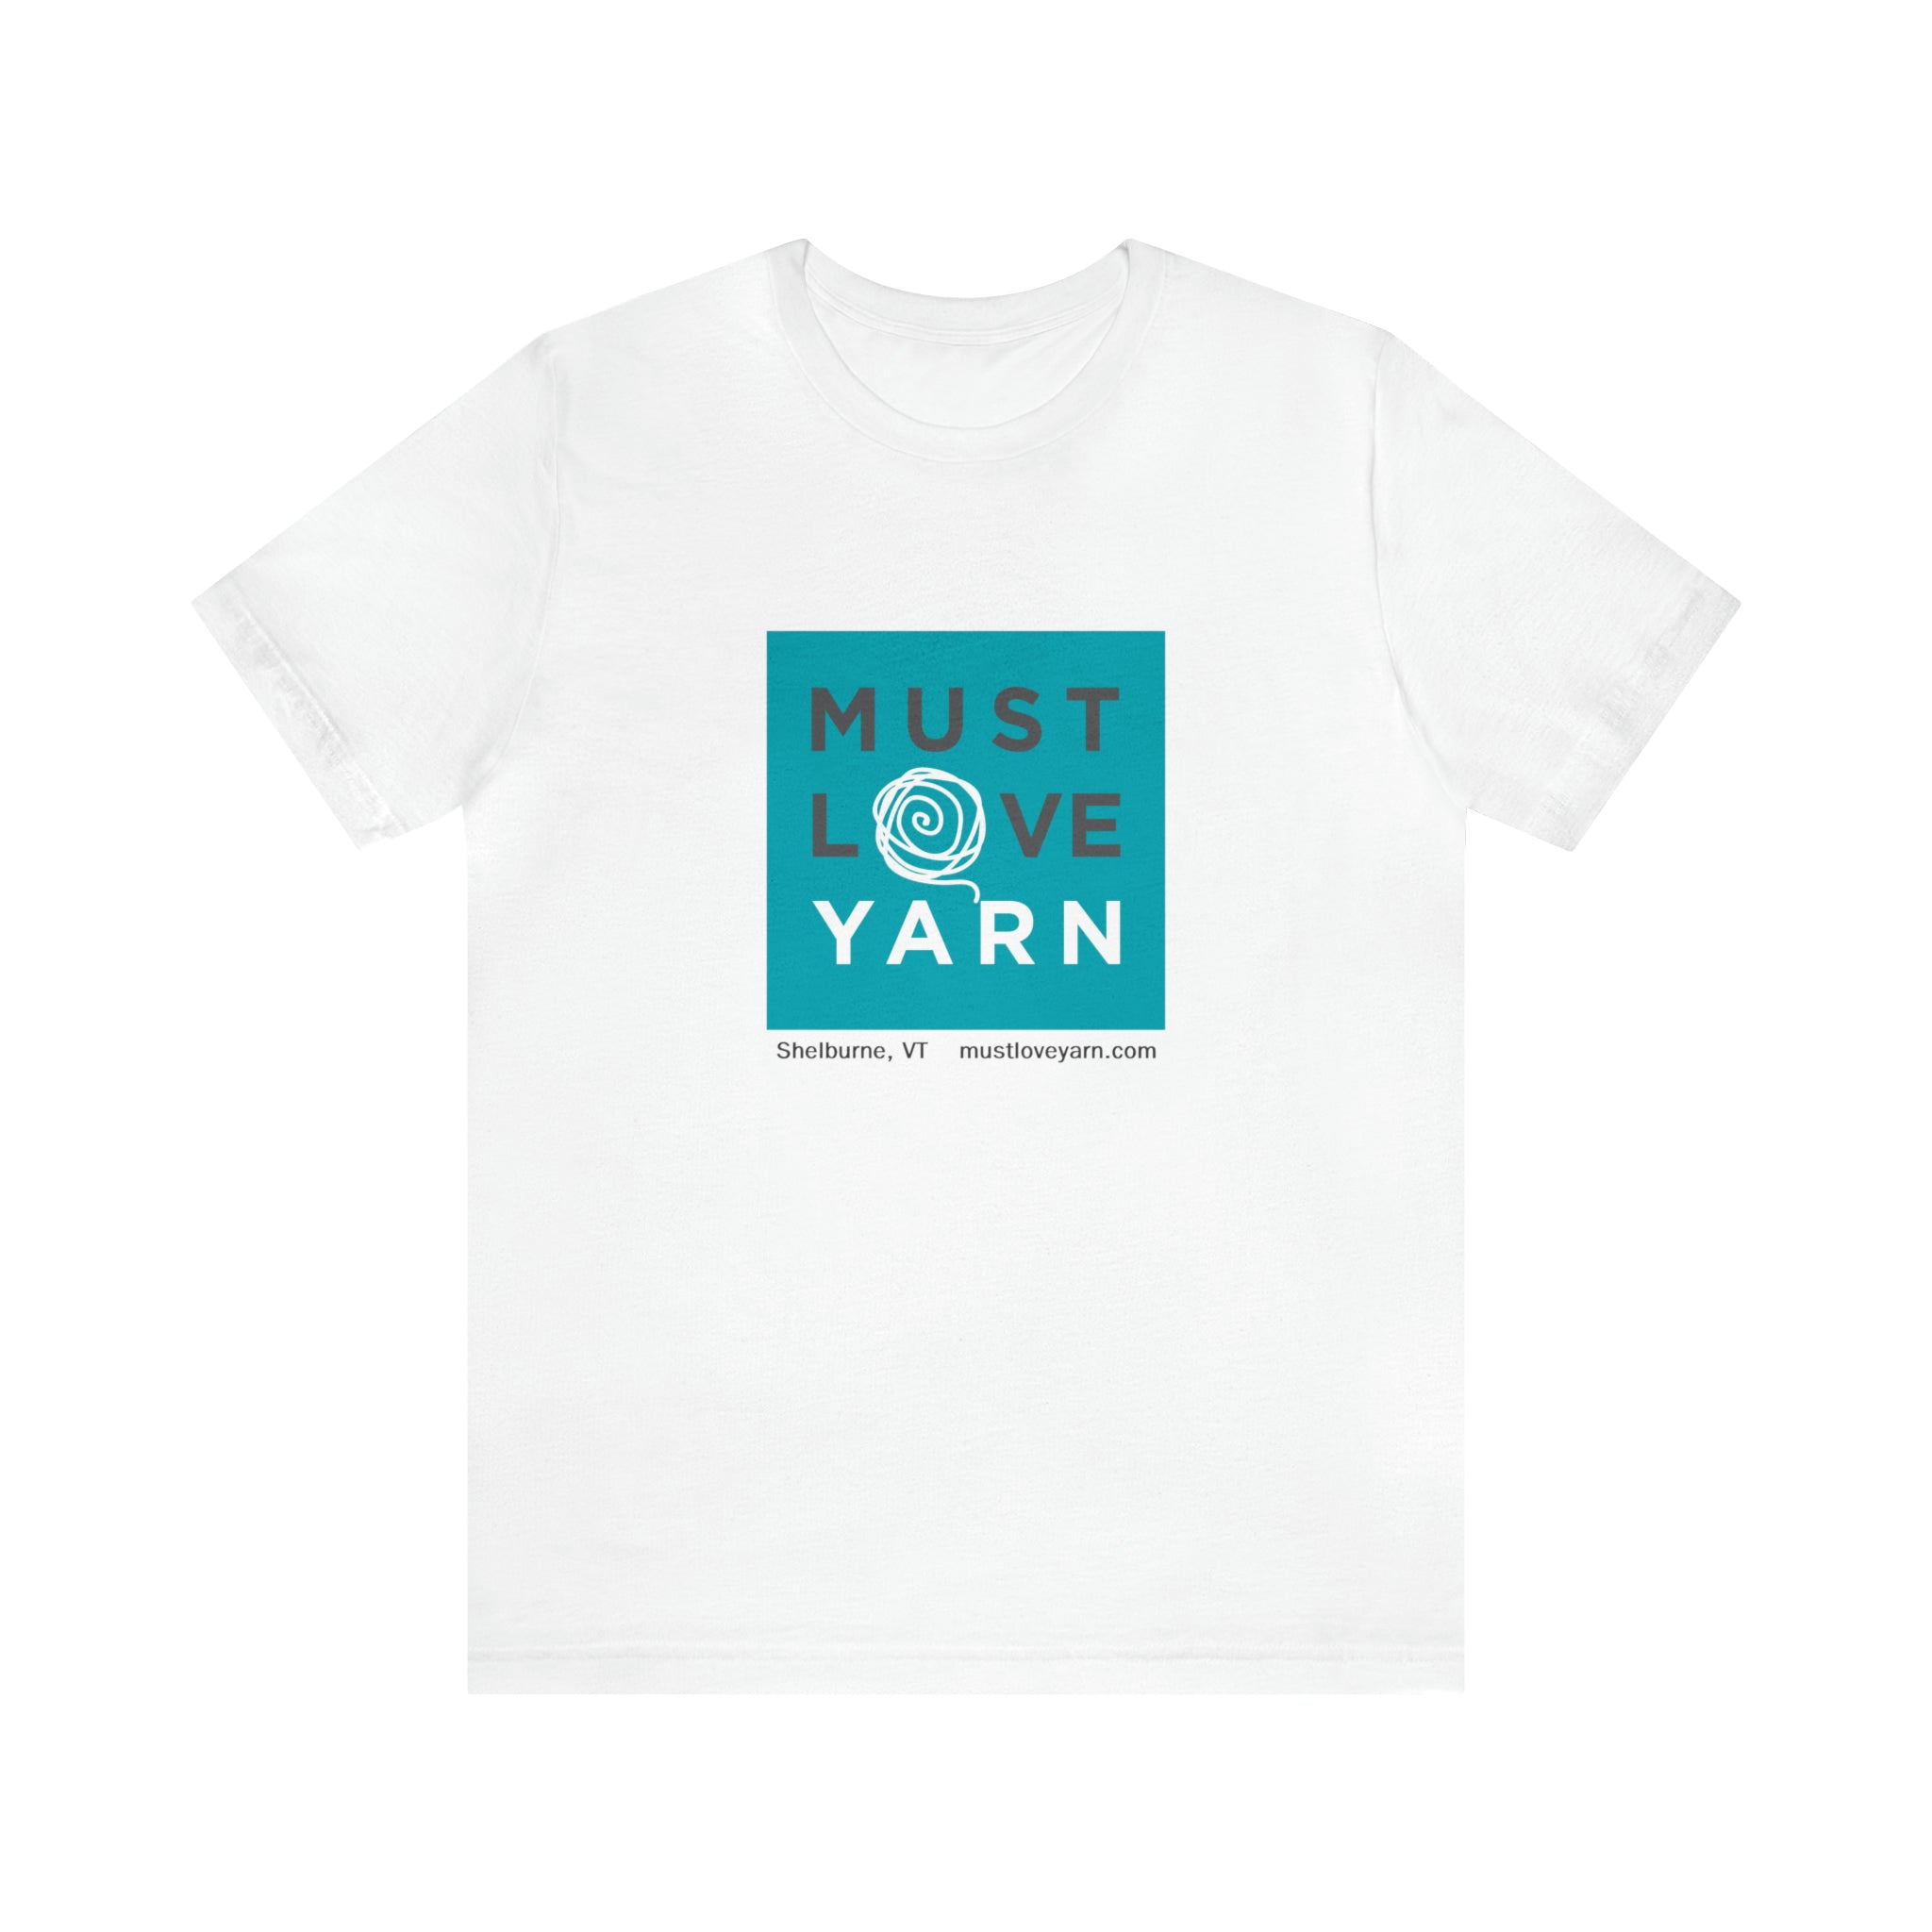 Must Love Yarn - Online Store